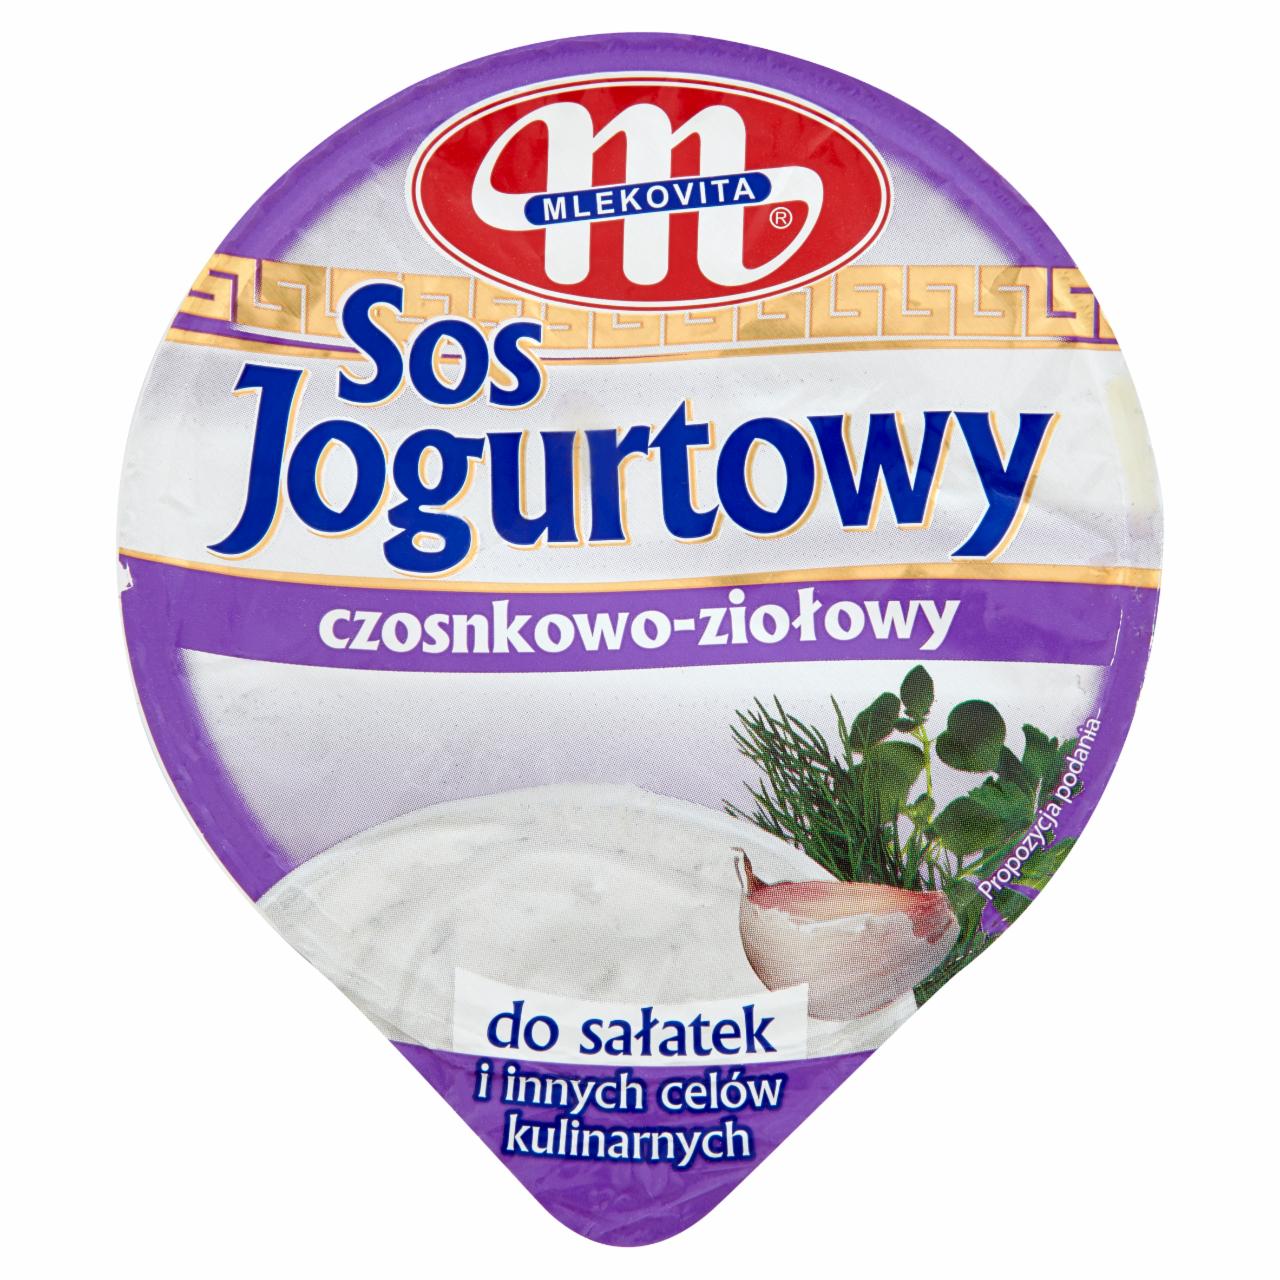 Zdjęcia - Mlekovita Sos jogurtowy czosnkowo-ziołowy 200 g